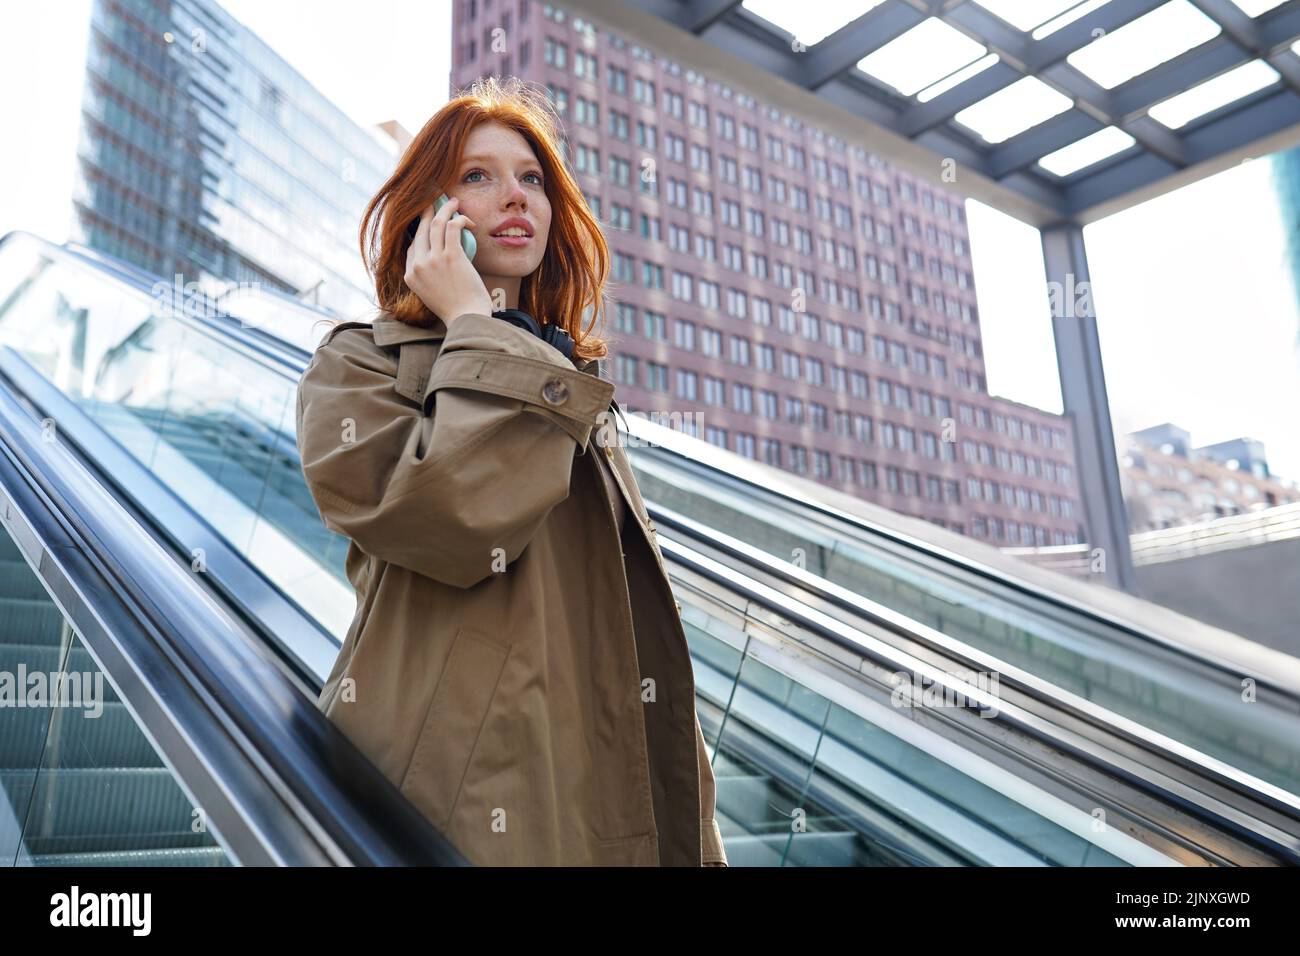 Une jeune fille à tête rouge parle sur un téléphone portable, debout sur un escalier roulant. Banque D'Images